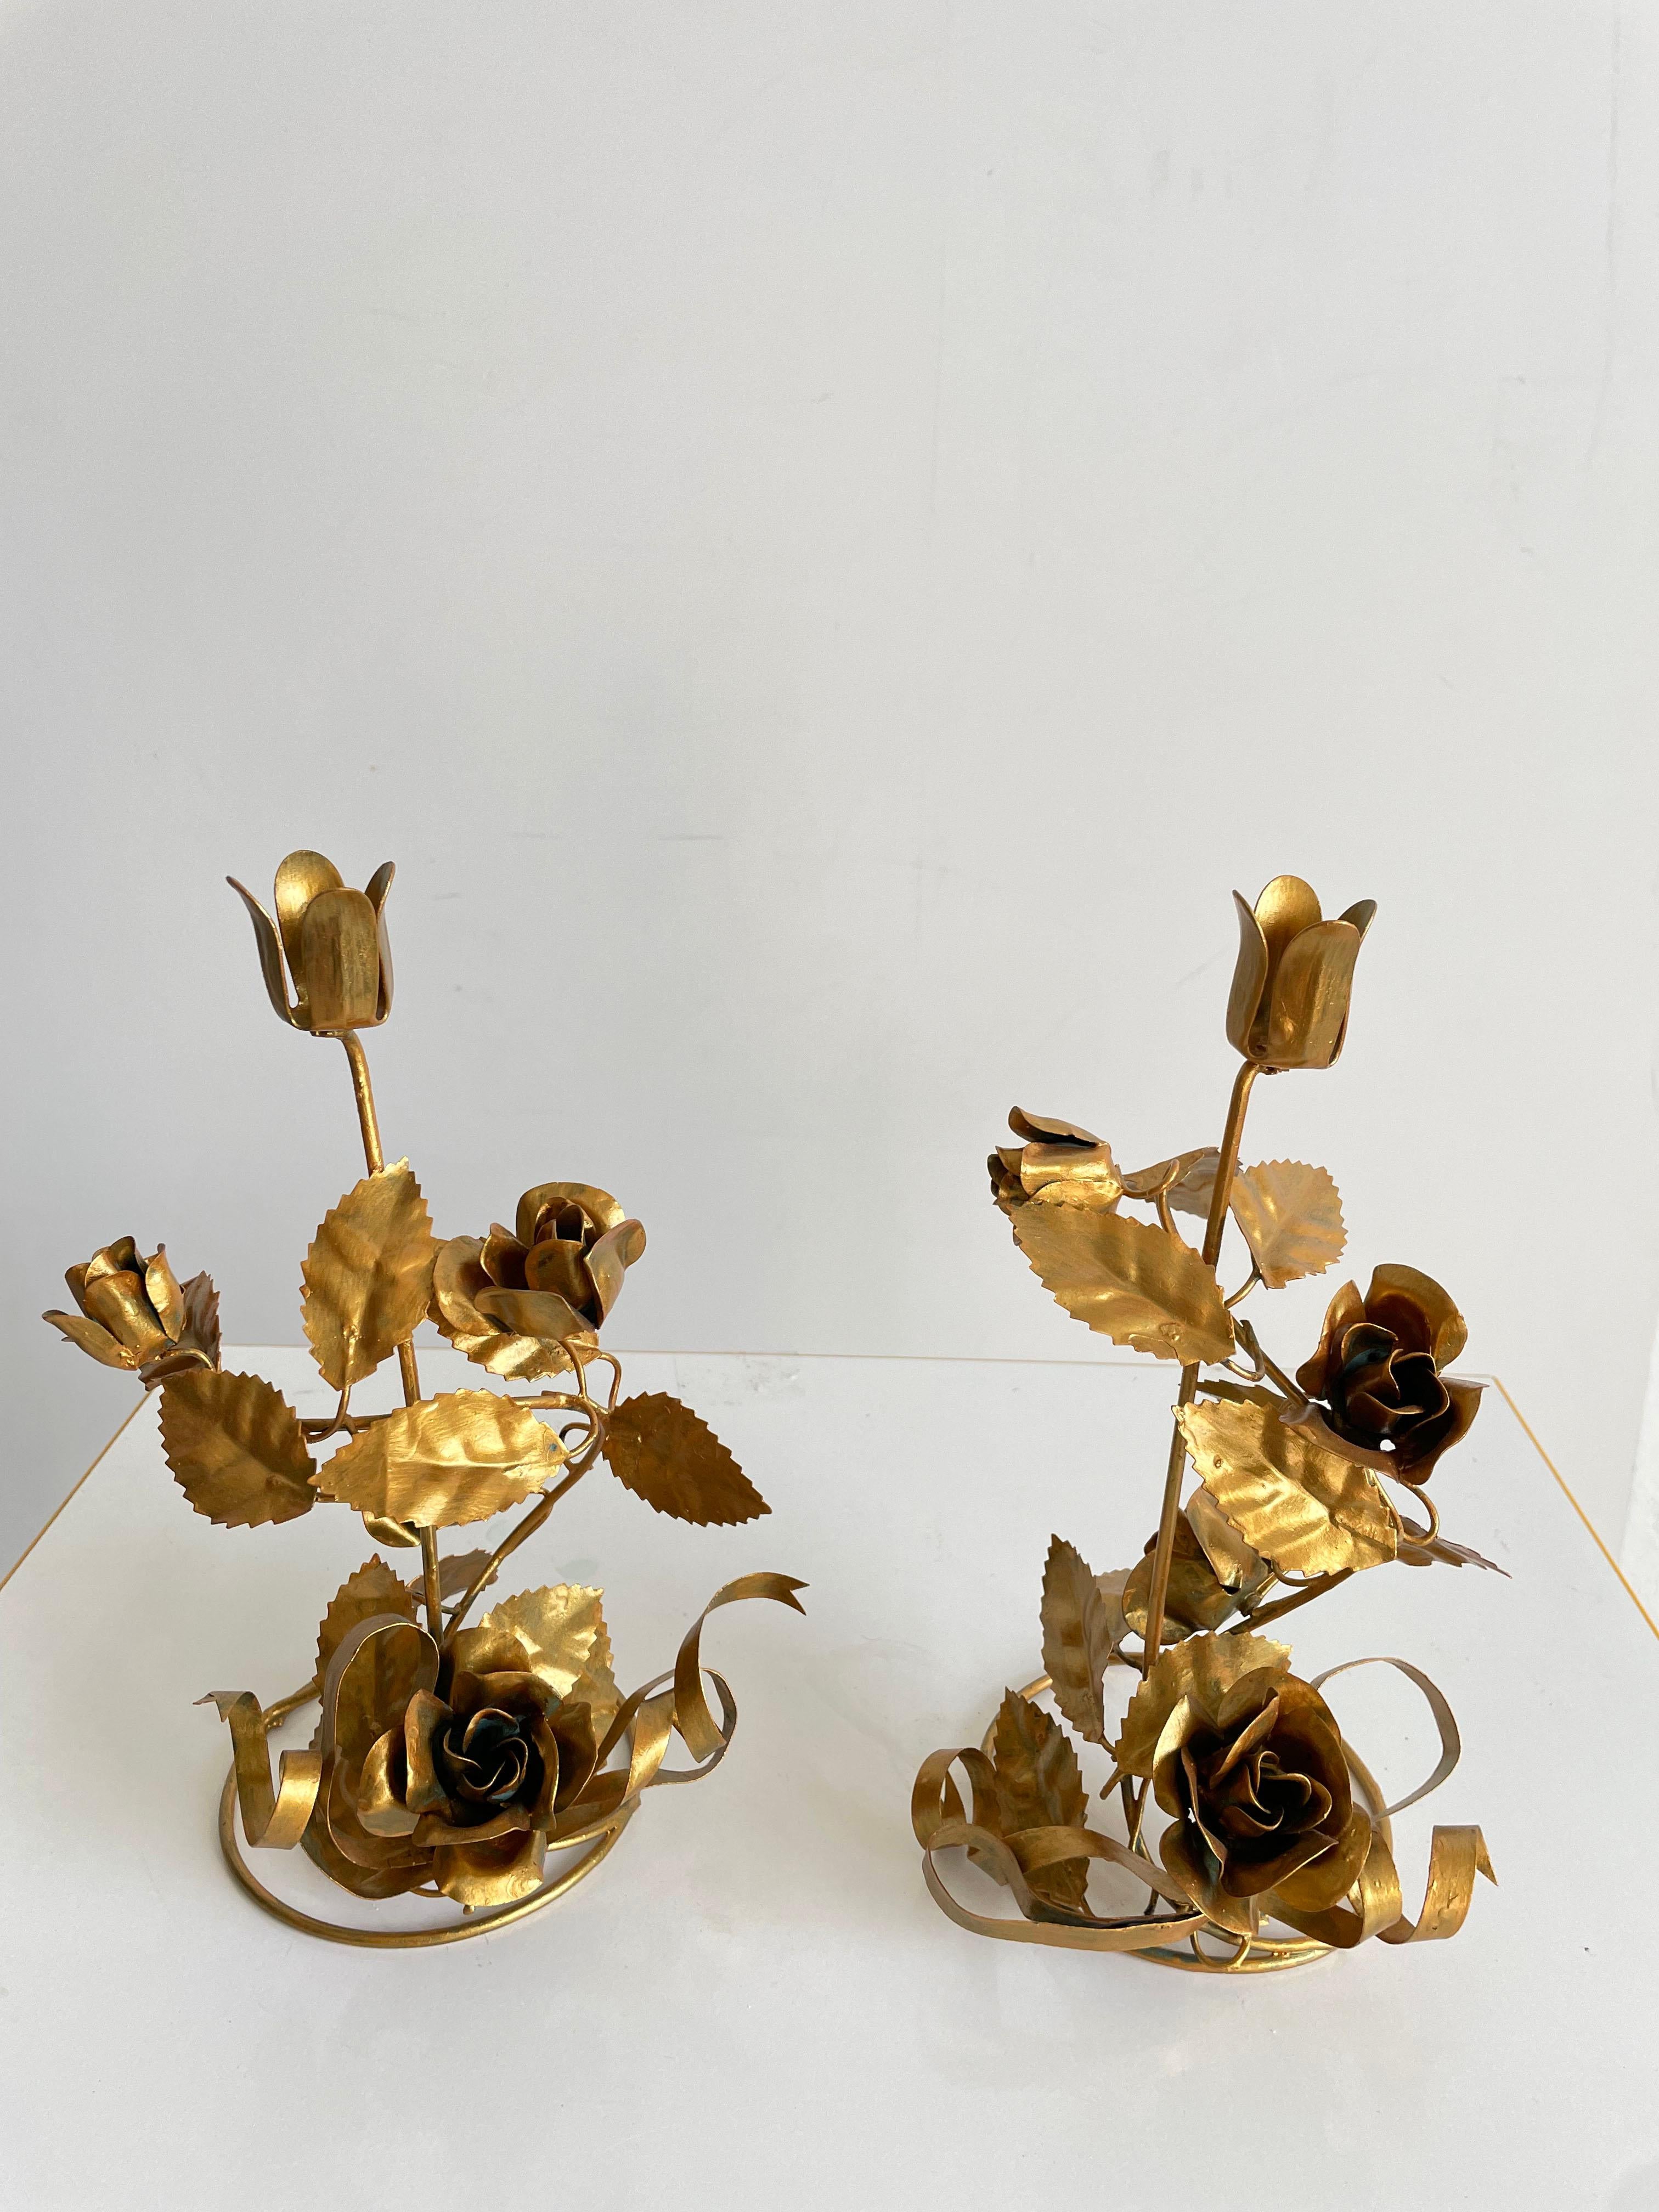 Paar italienische Vintage-Kerzenständer aus den 1960er Jahren

Zartes florales Design aus vergoldetem Metall, jeder Kerzenständer hat oben einen blumenförmigen Kerzenhalter mit einem Durchmesser von 2 cm

Die Kerzenhalter sind in sehr gutem